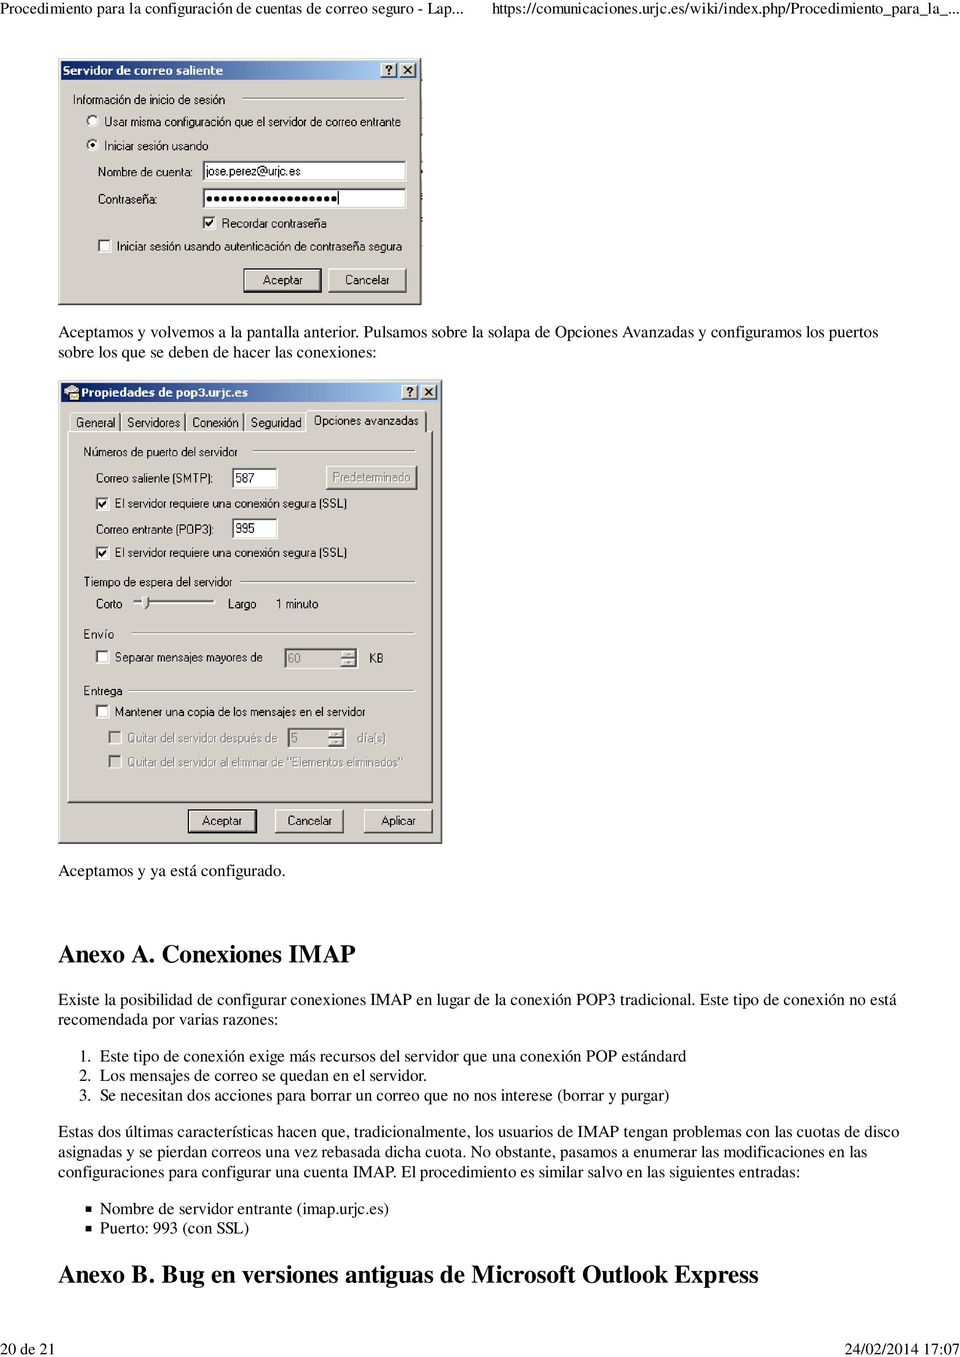 Conexiones IMAP Existe la posibilidad de configurar conexiones IMAP en lugar de la conexión POP3 tradicional. Este tipo de conexión no está recomendada por varias razones: 1. 2. 3.